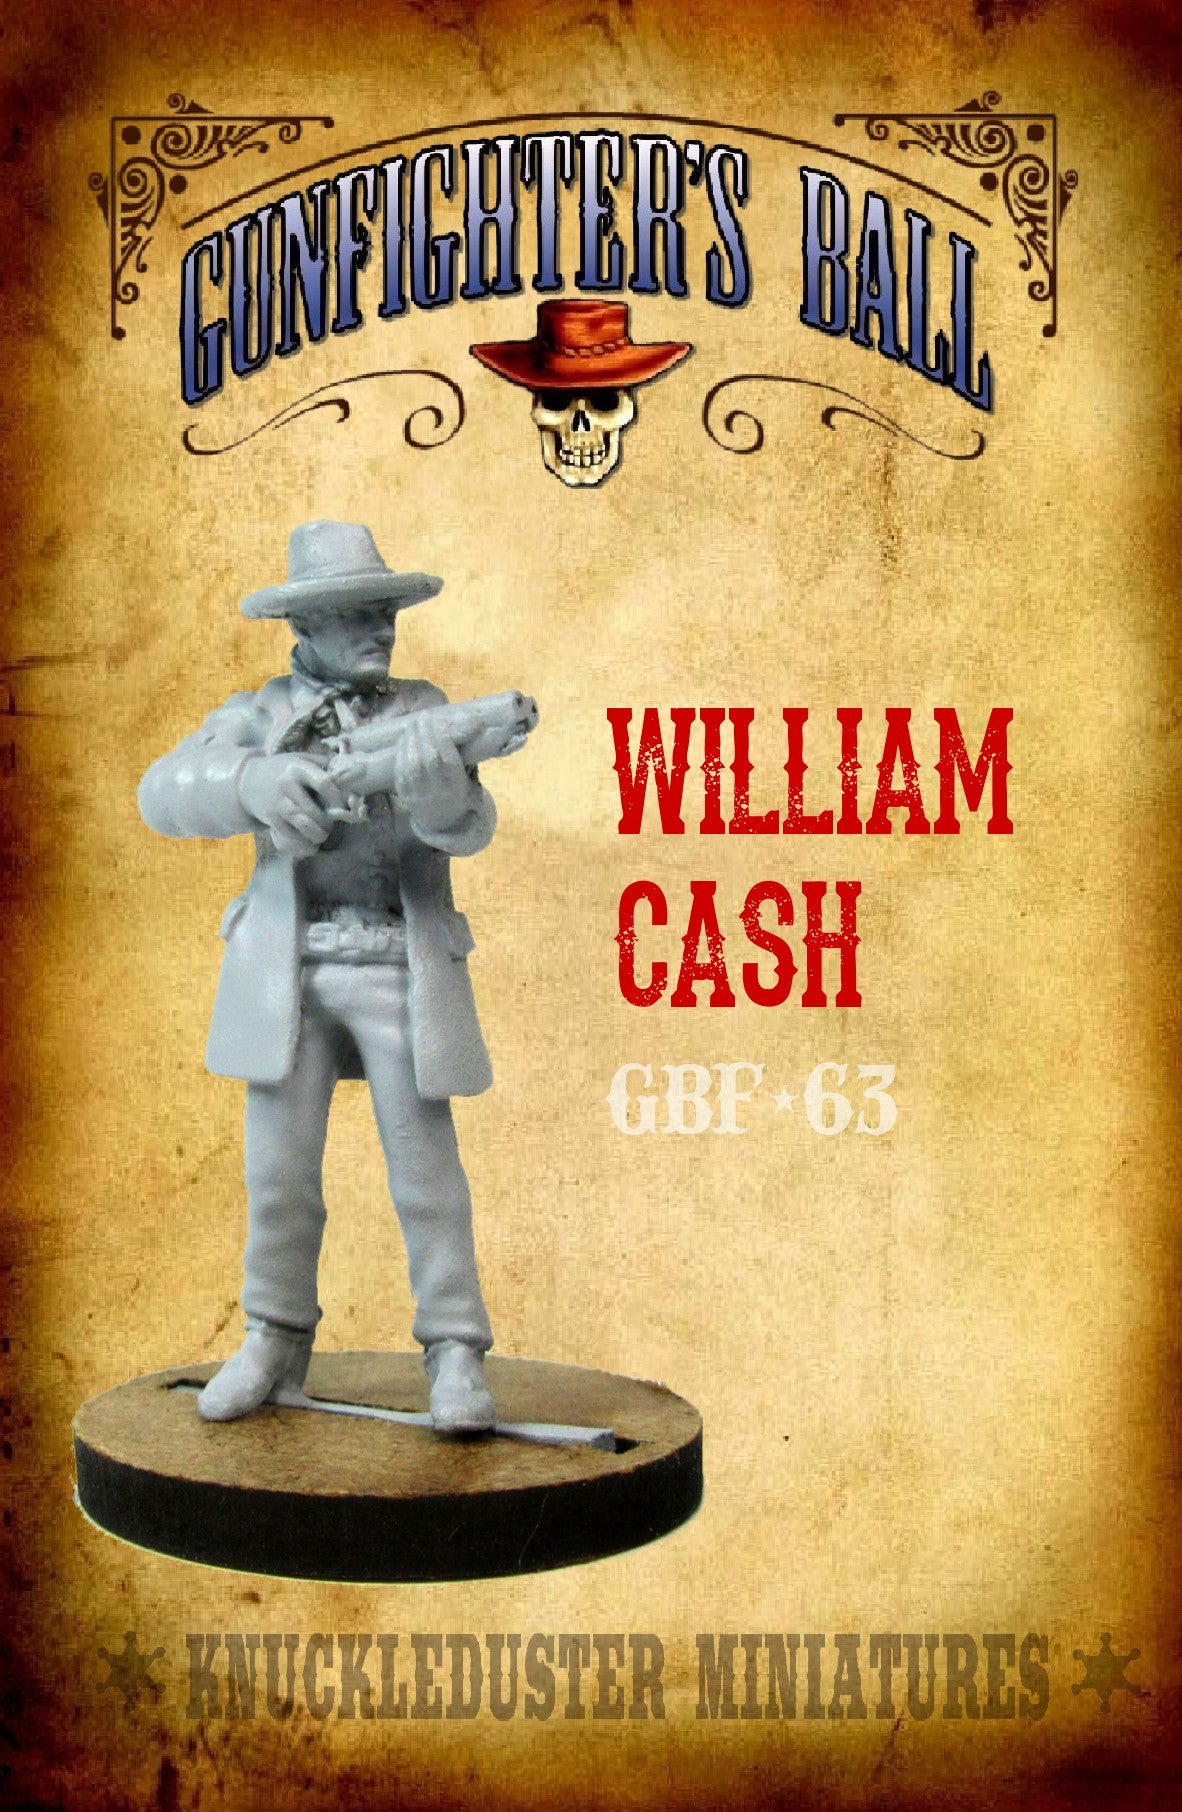 William Cash